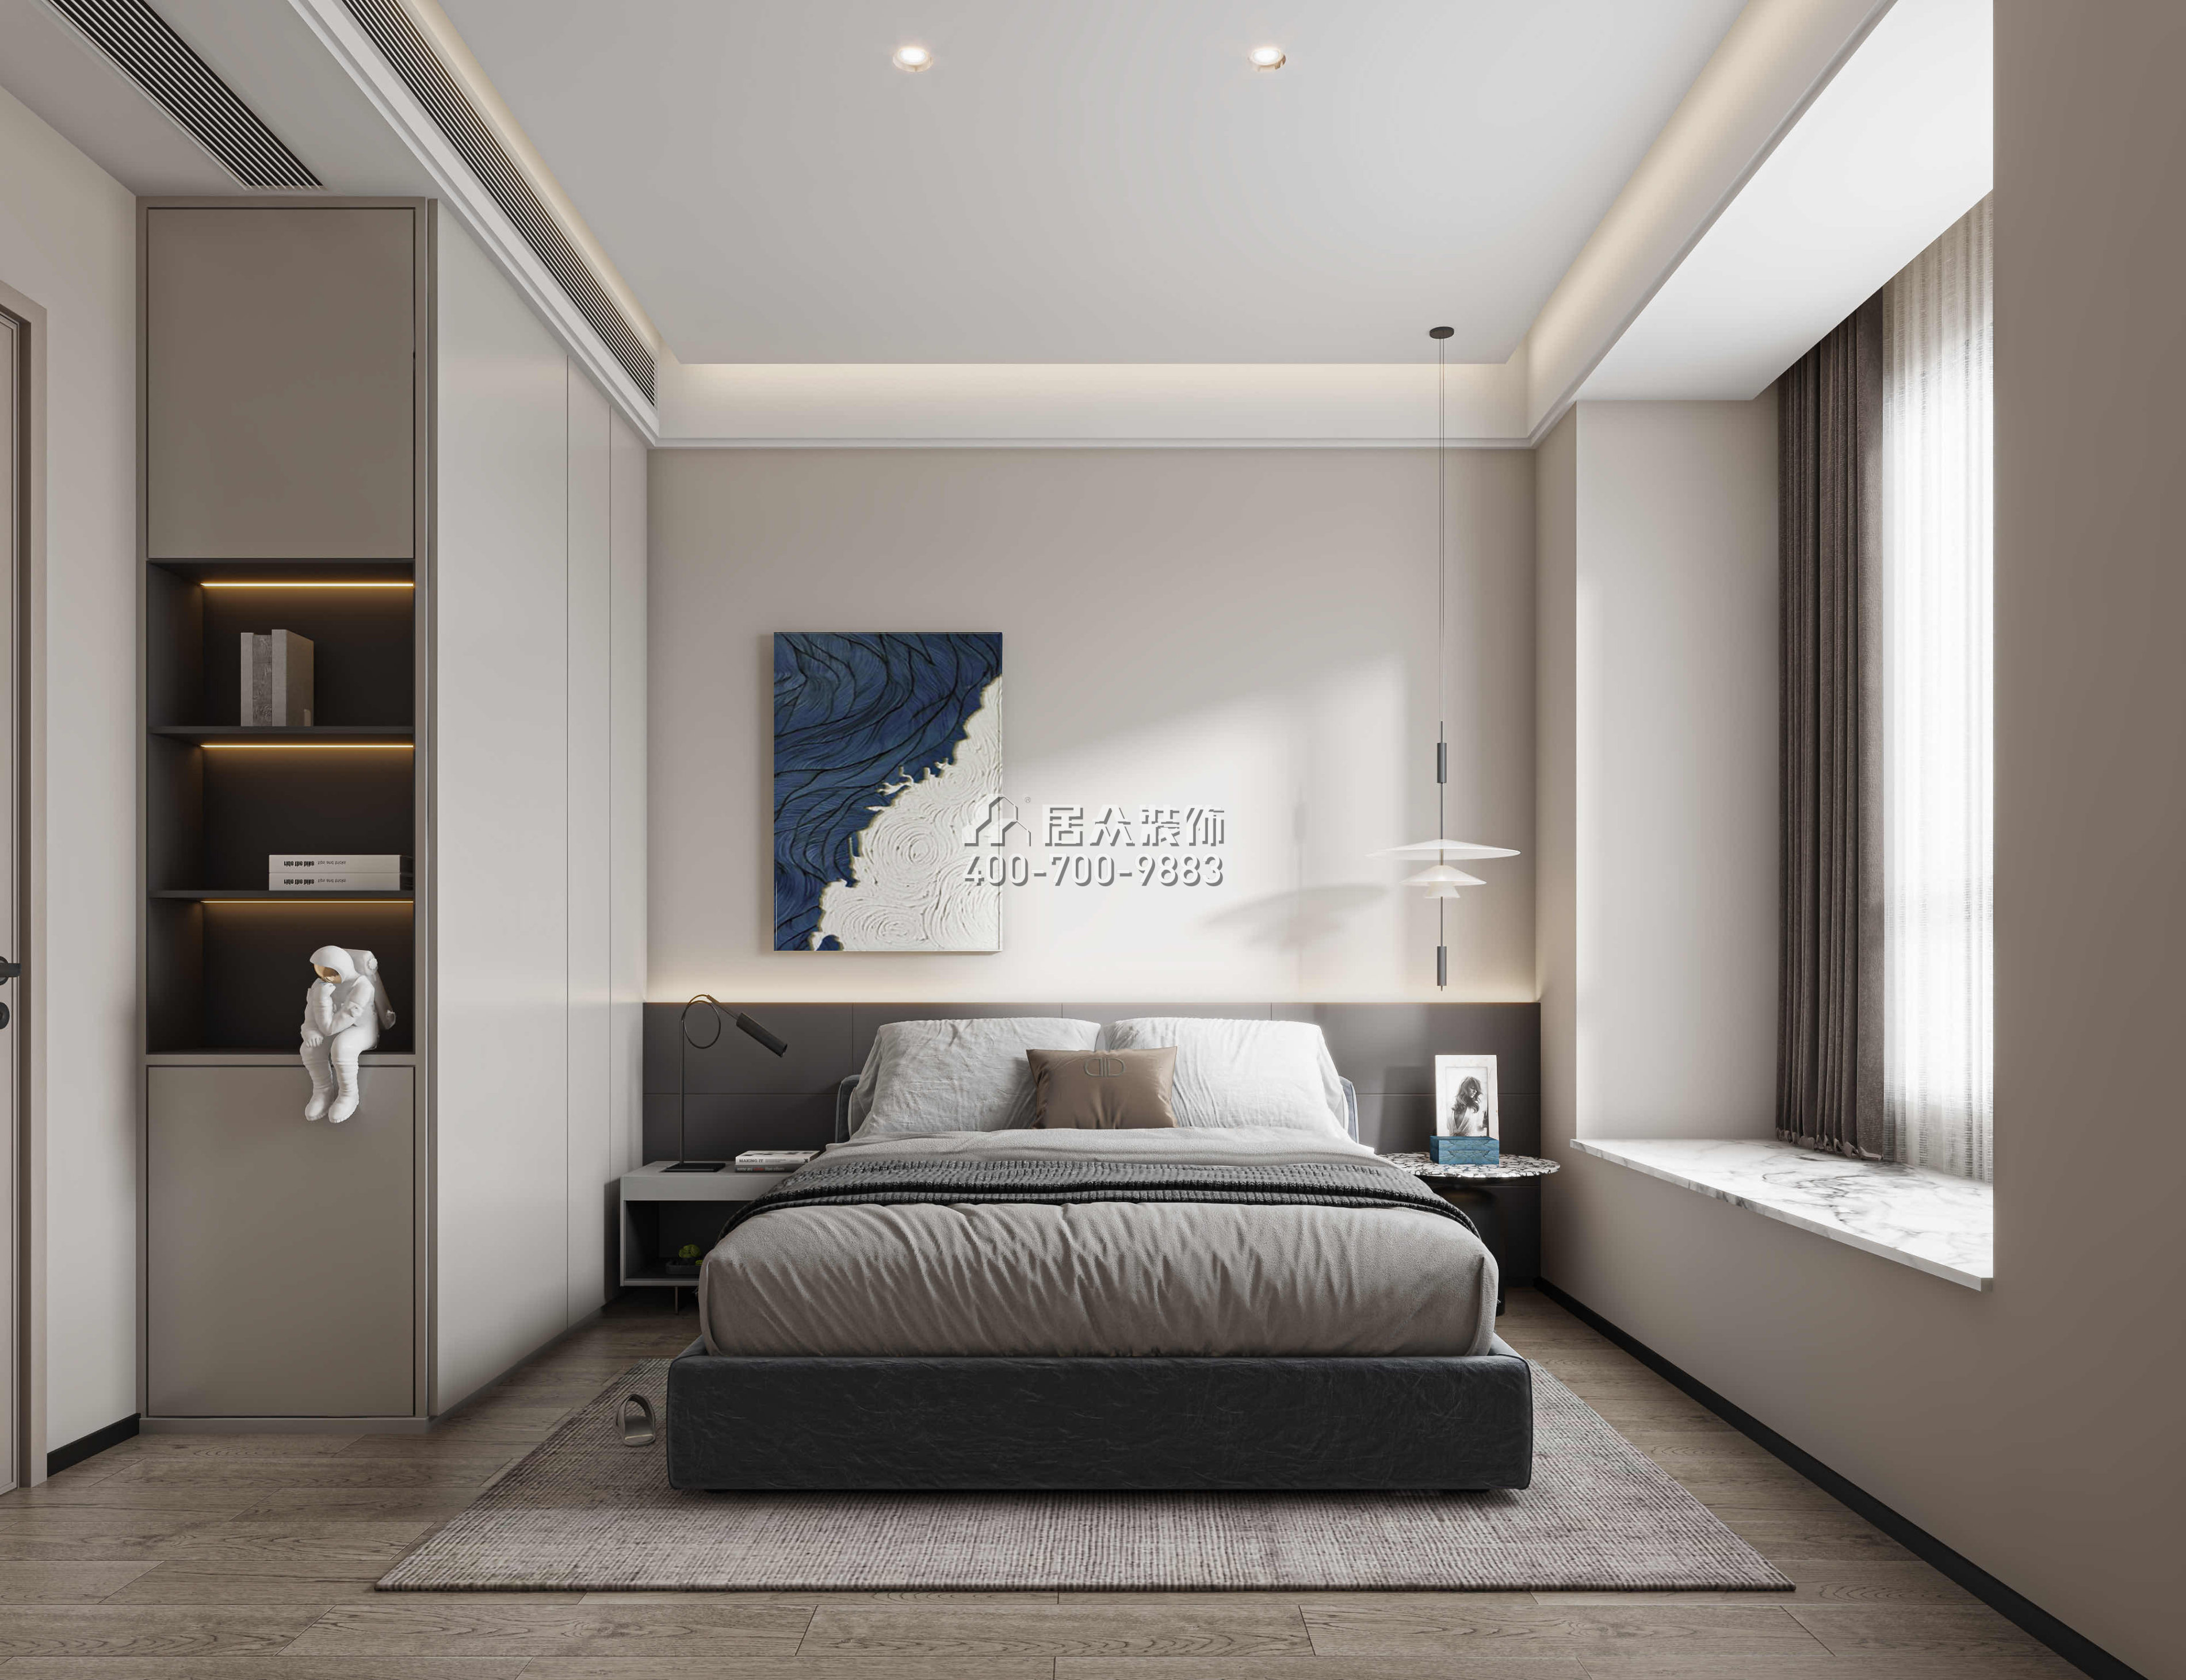 华发四季峰景140平方米现代简约风格平层户型卧室装修效果图